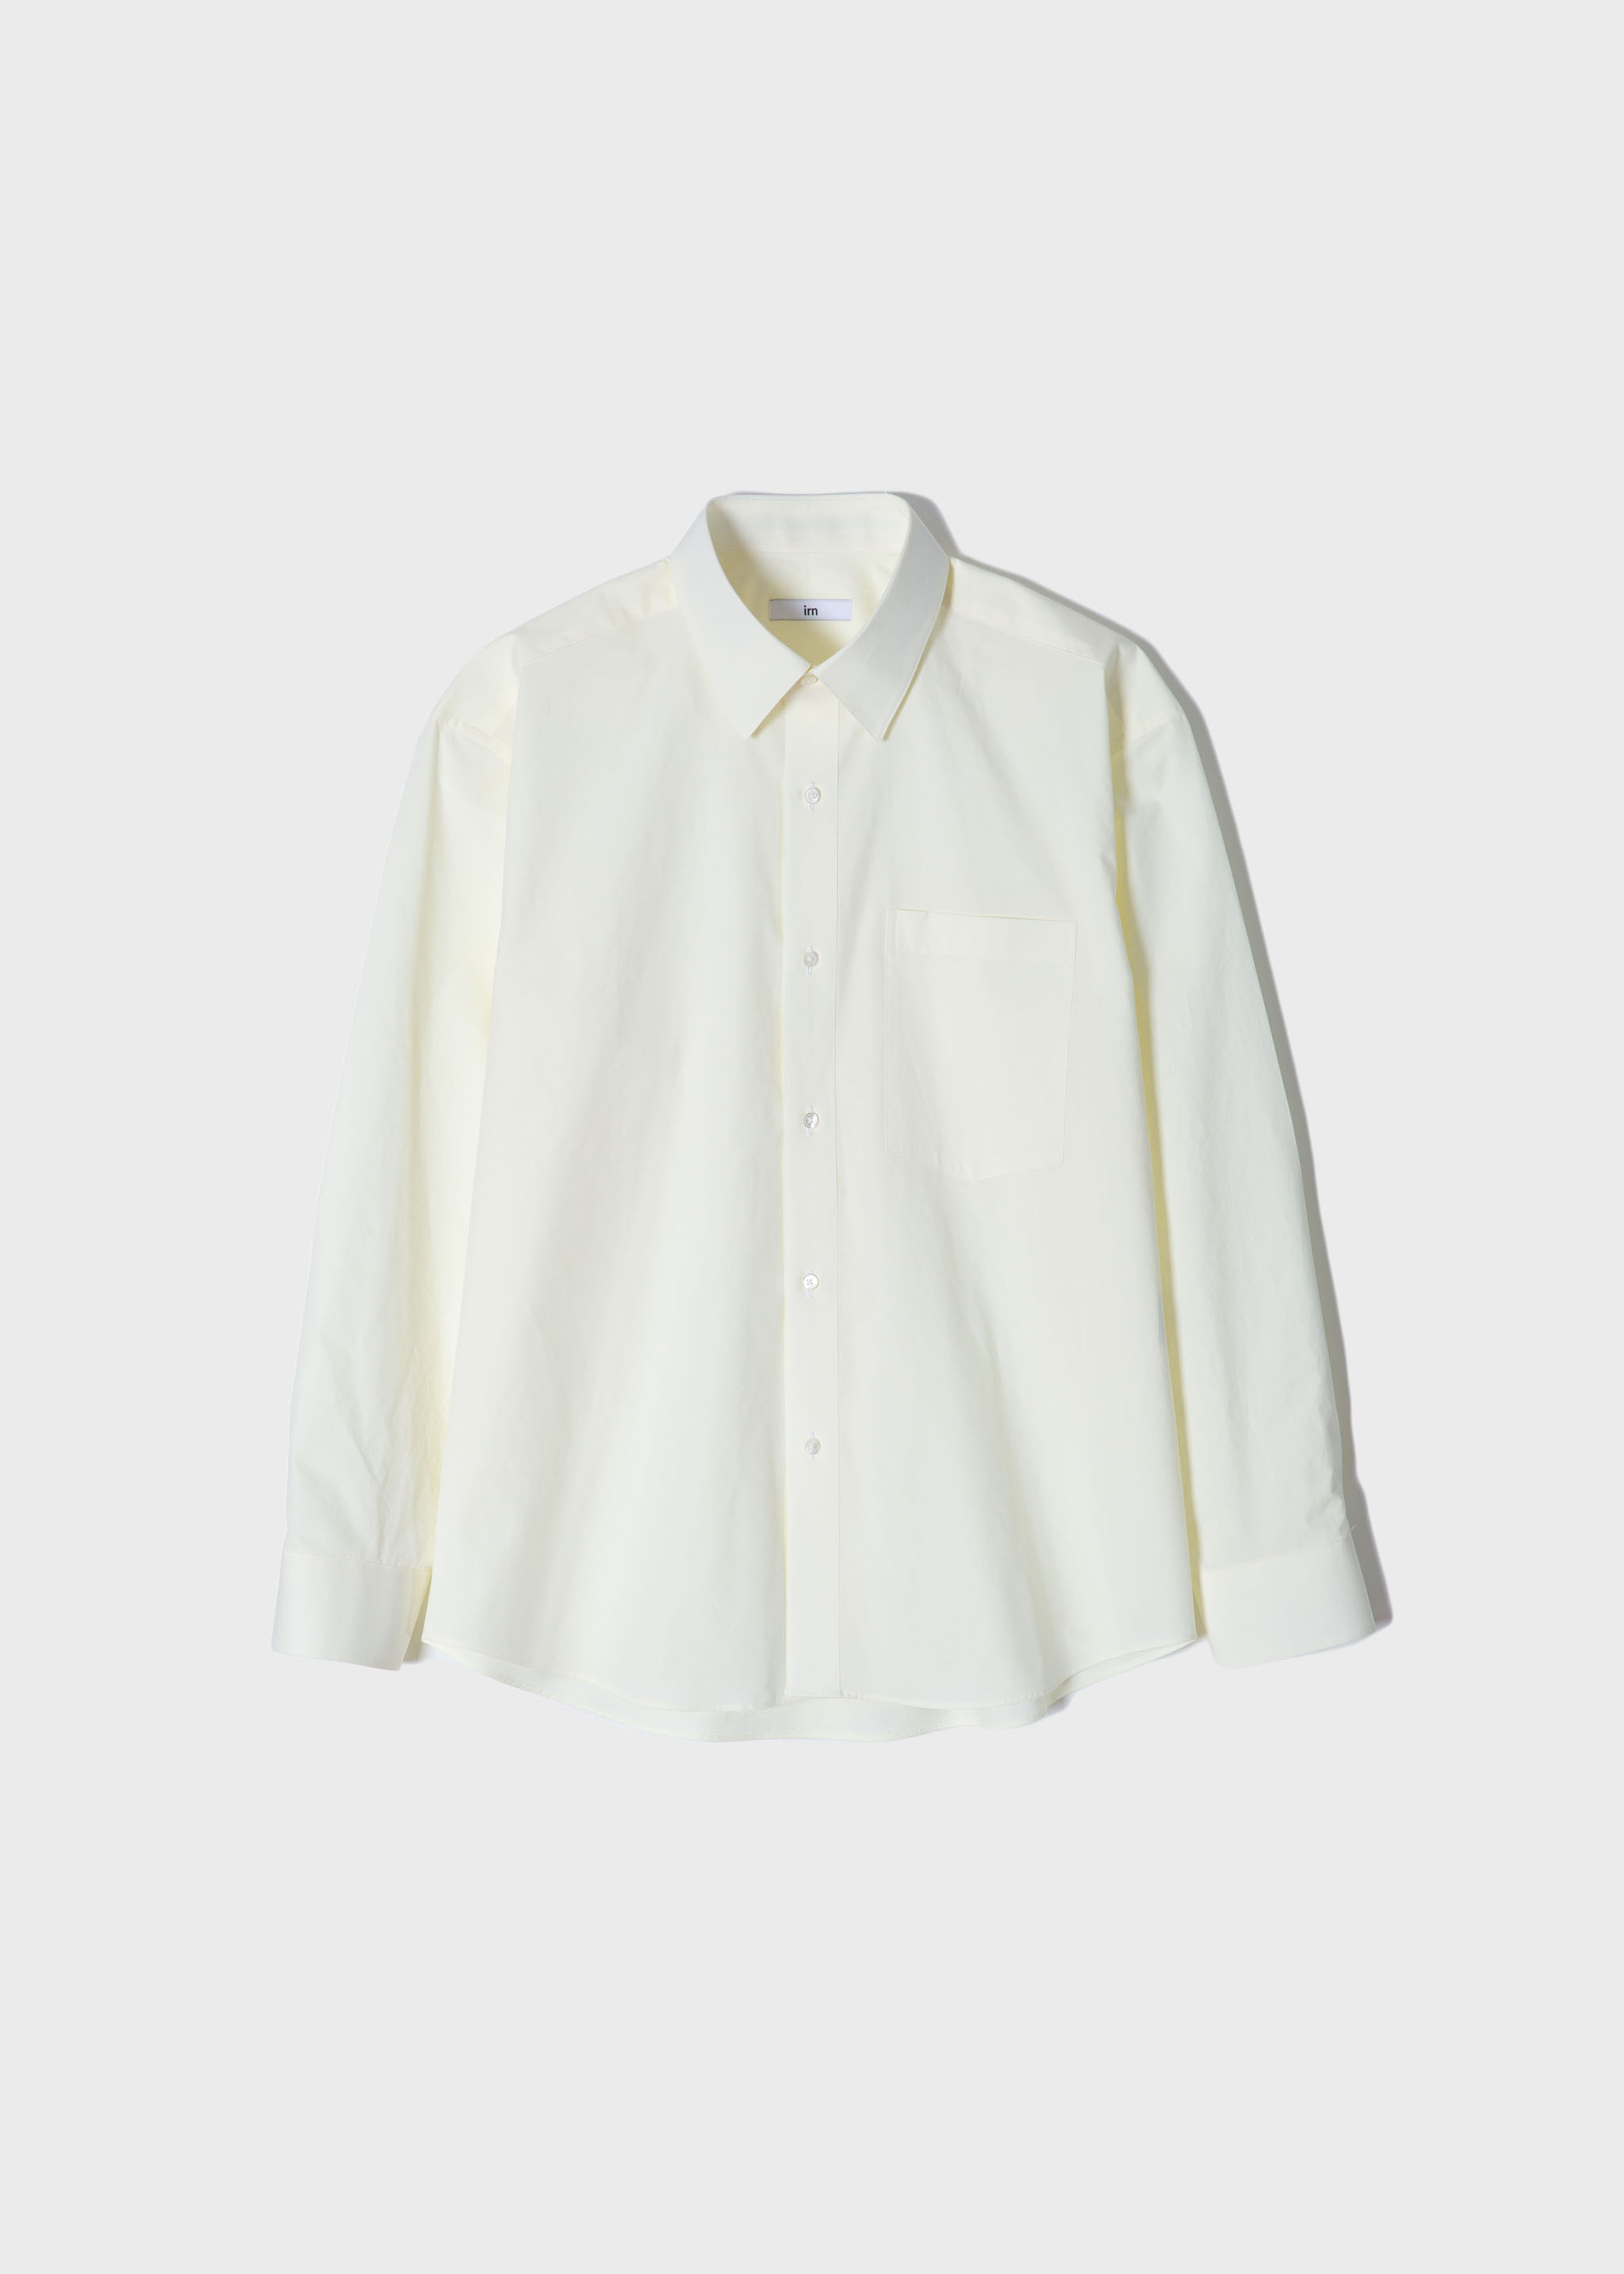 [이른(irn) x hyeonkim]  Spring Shirt Cream Lemon[40수 고밀도, 세련된 색감, 기분 좋은 착용감]